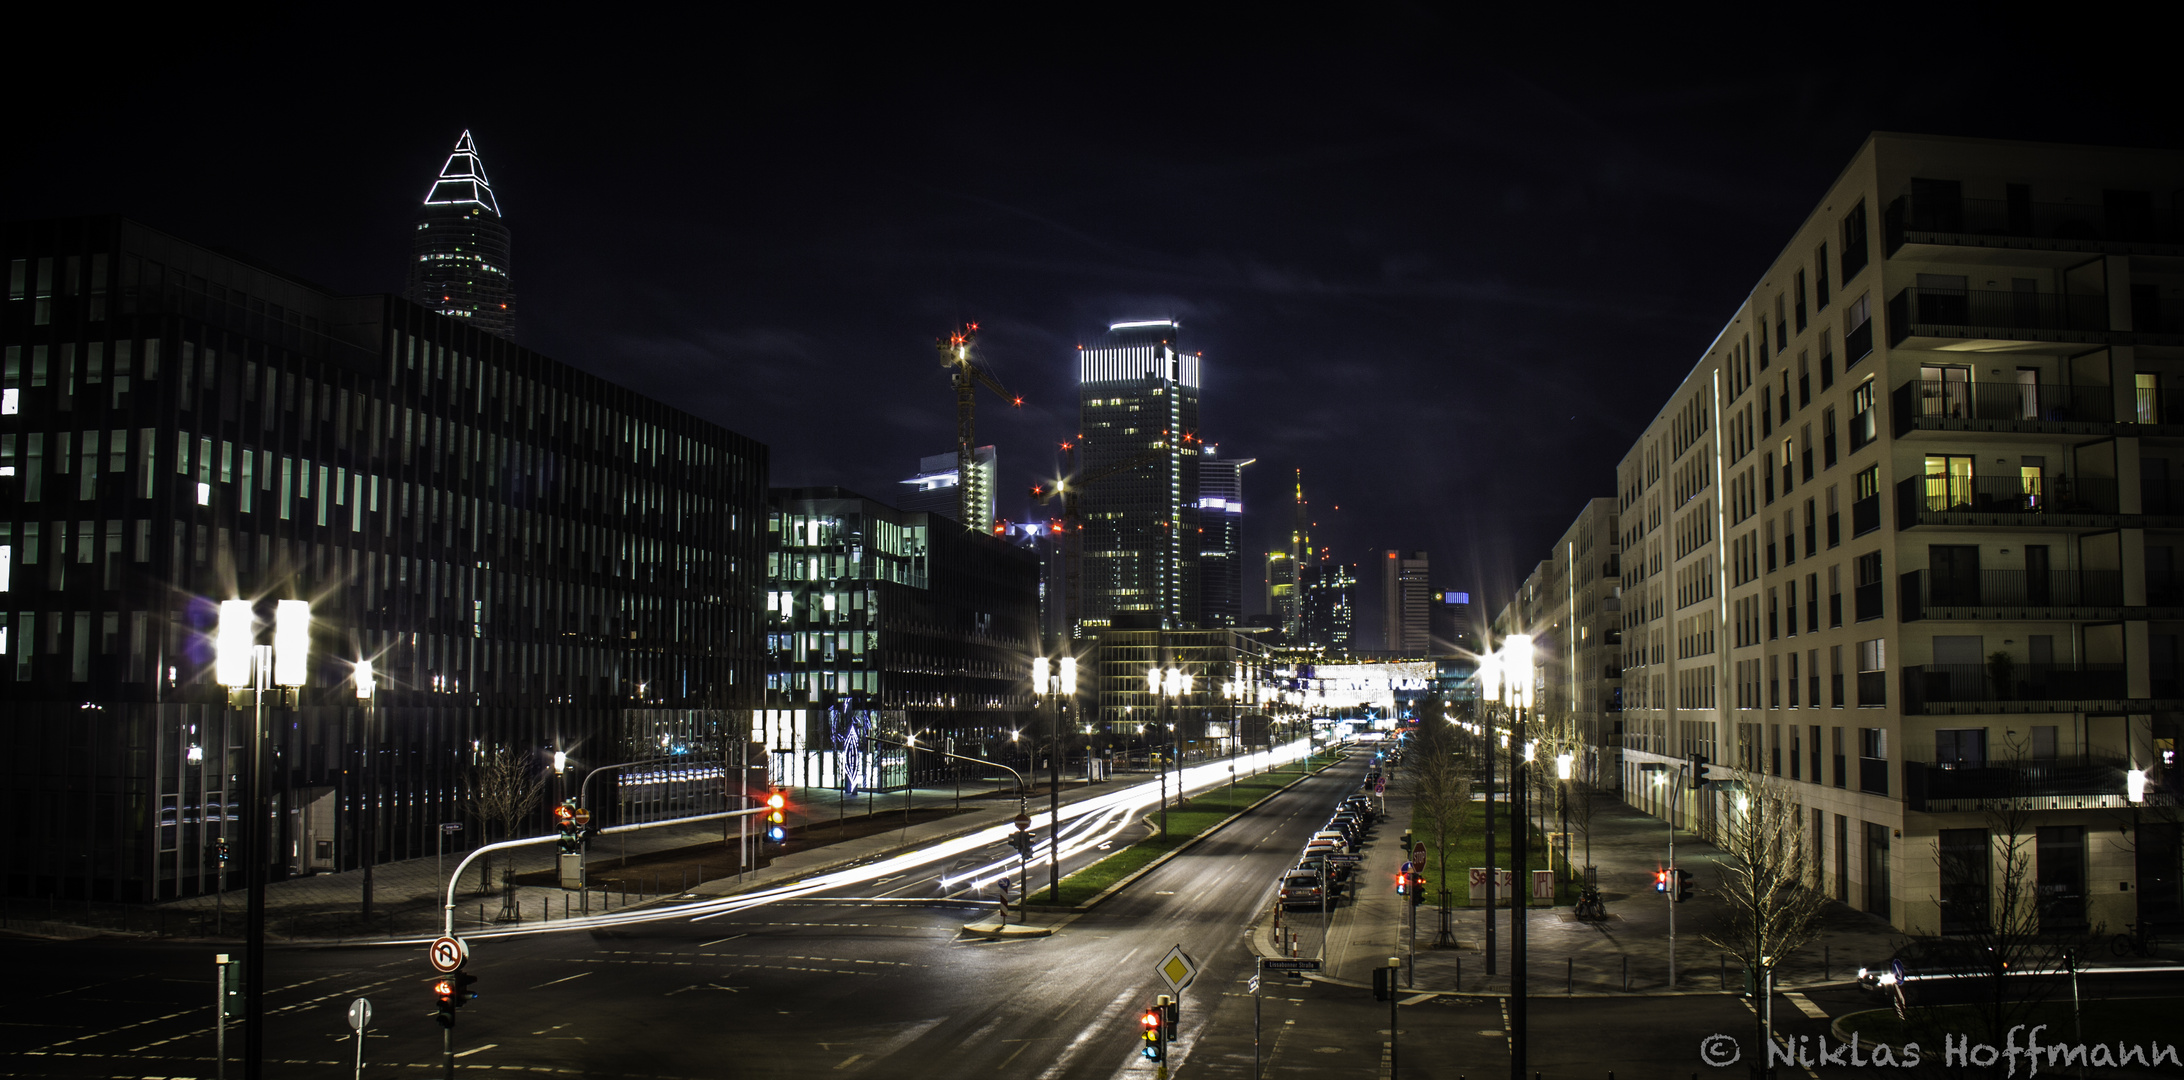 "Frankfurt Europaallee at night"